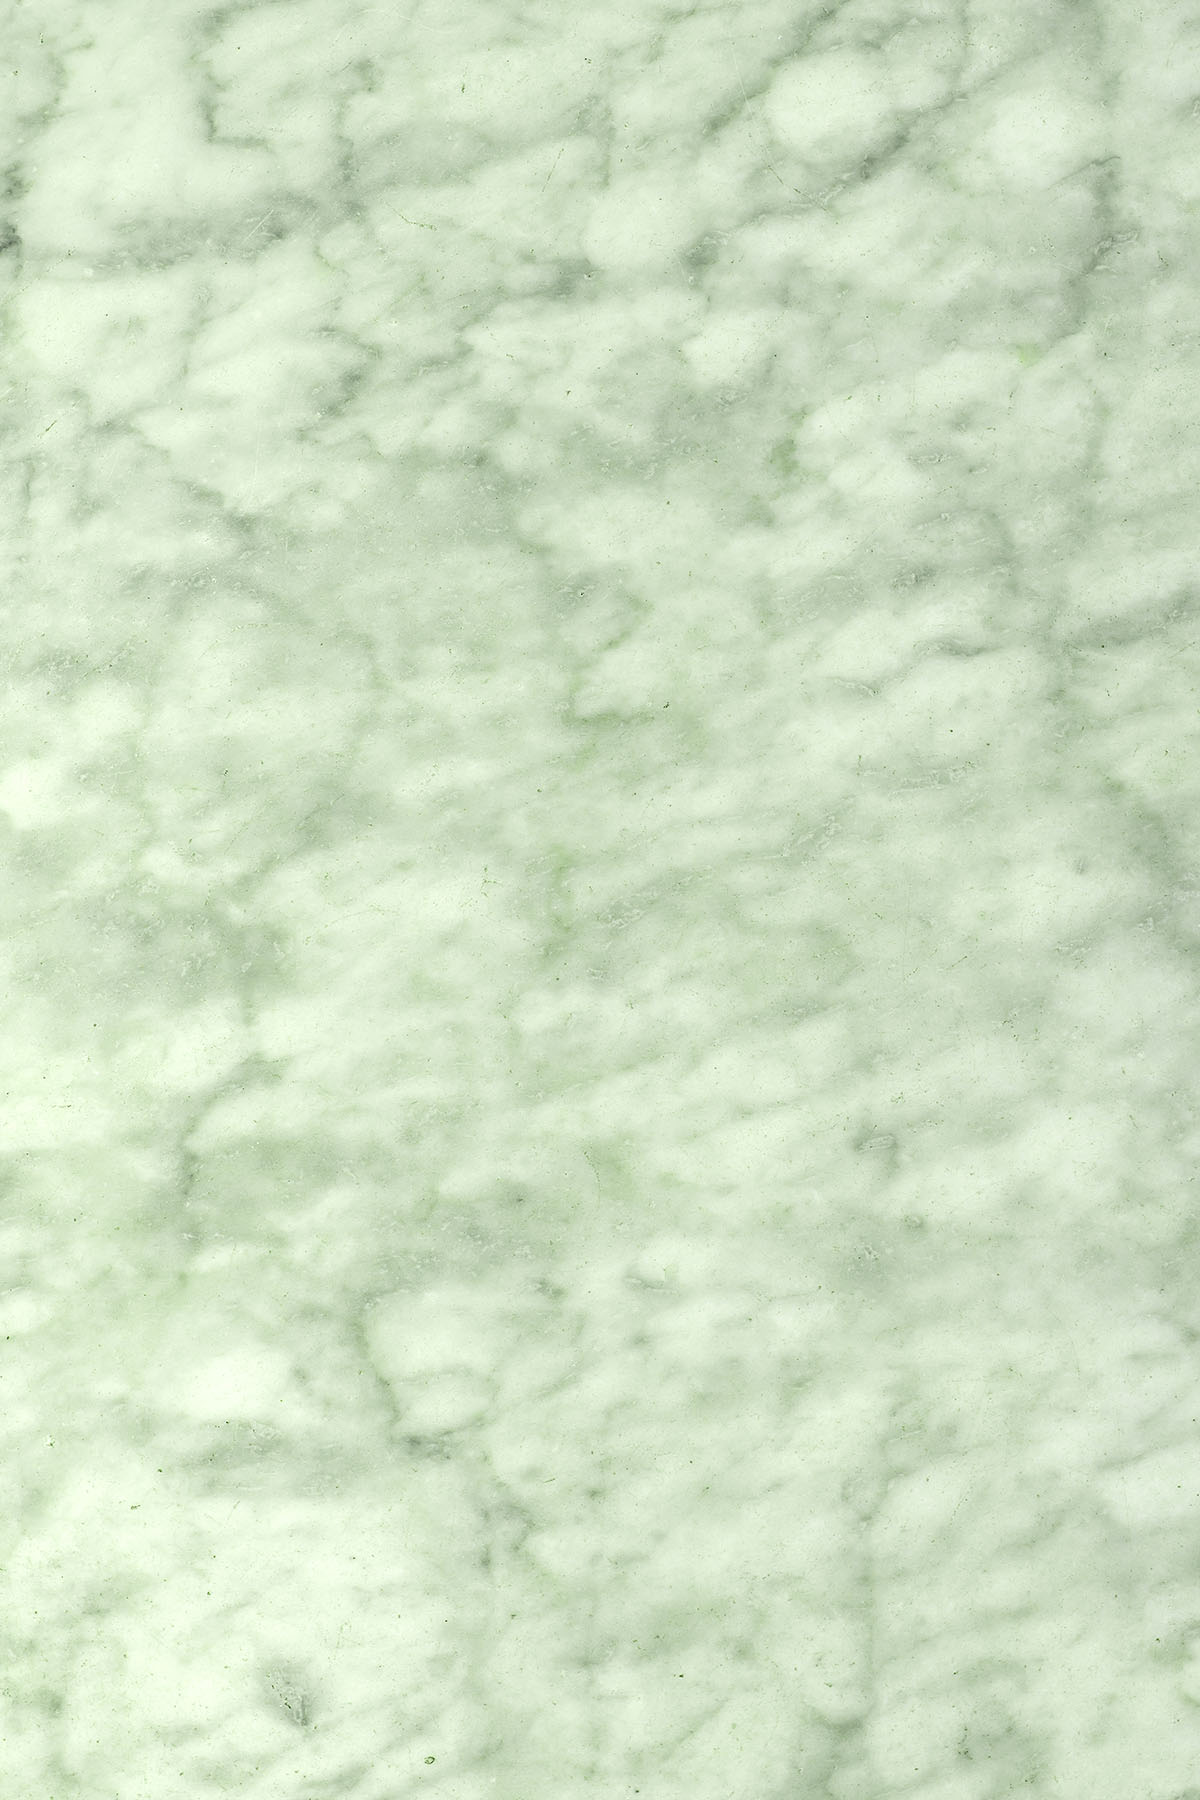 Mint marmer fotoachtergrond met zachte lijnen voor foodfotografie